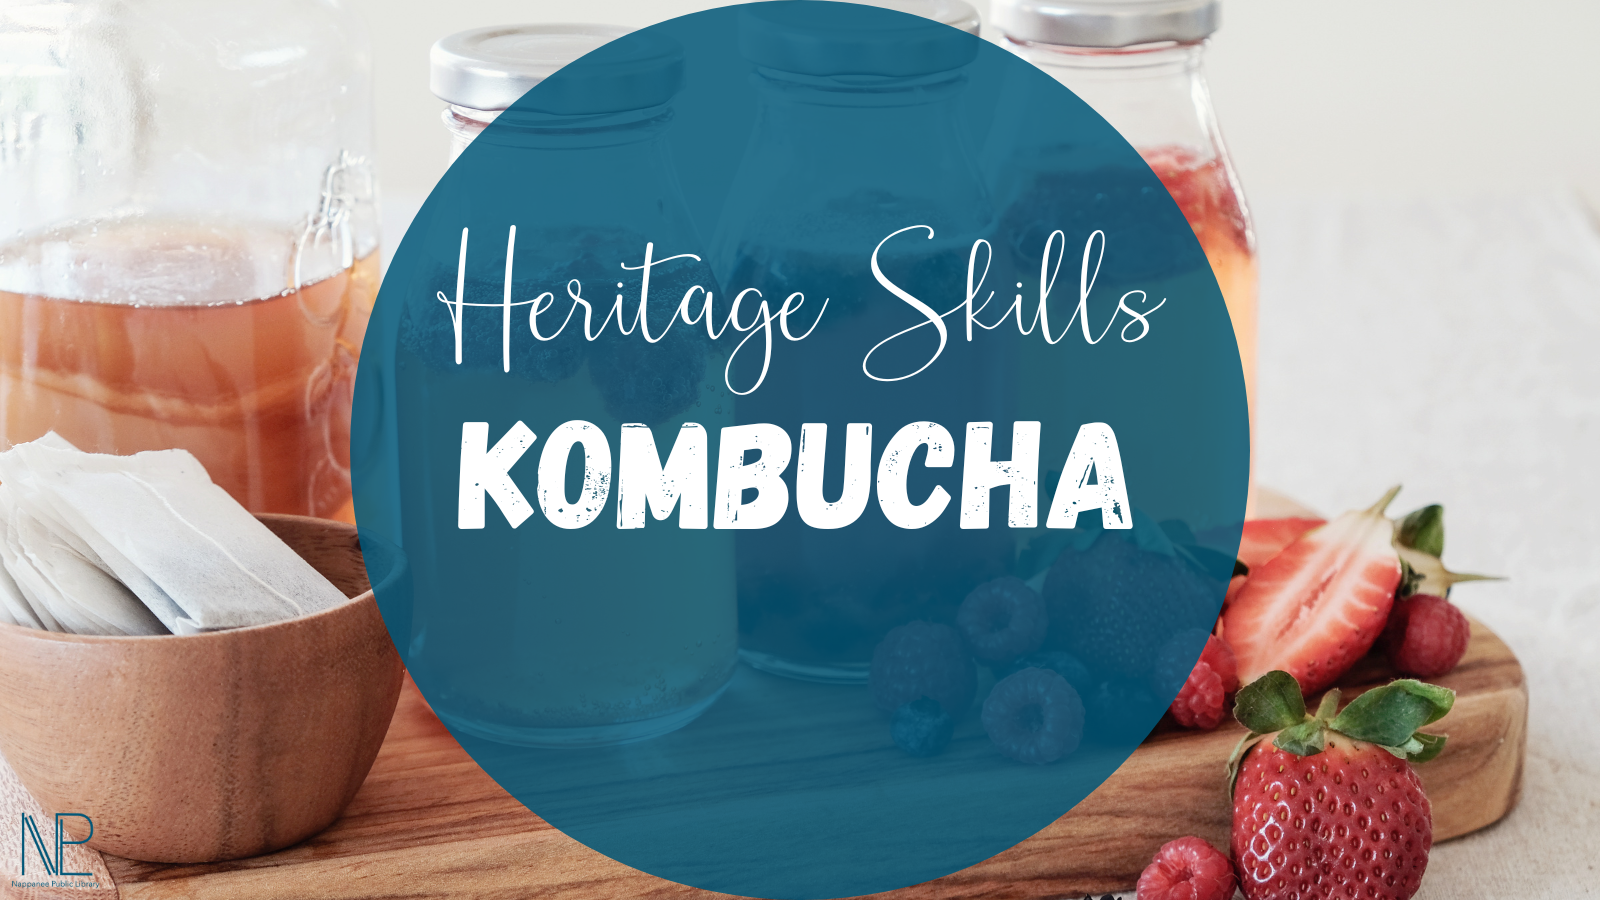 Heritage Skills: Kombucha